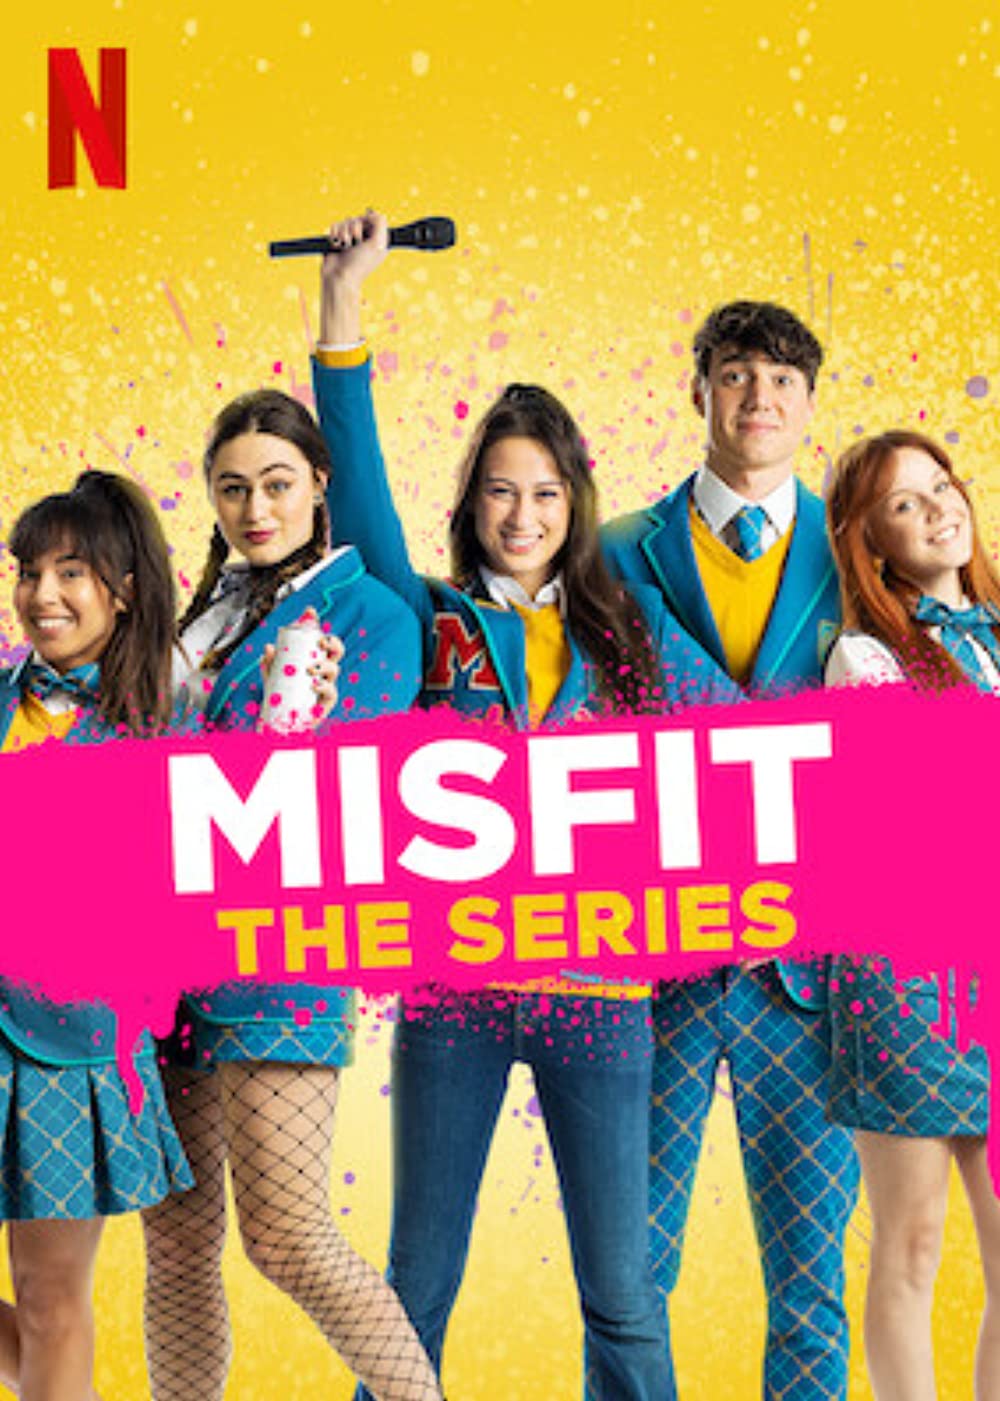 ดูหนังออนไลน์ฟรี MisFit The Series (2021) มิสฟิช เดอะ ซีรี่ย์ ตอนที่ 5